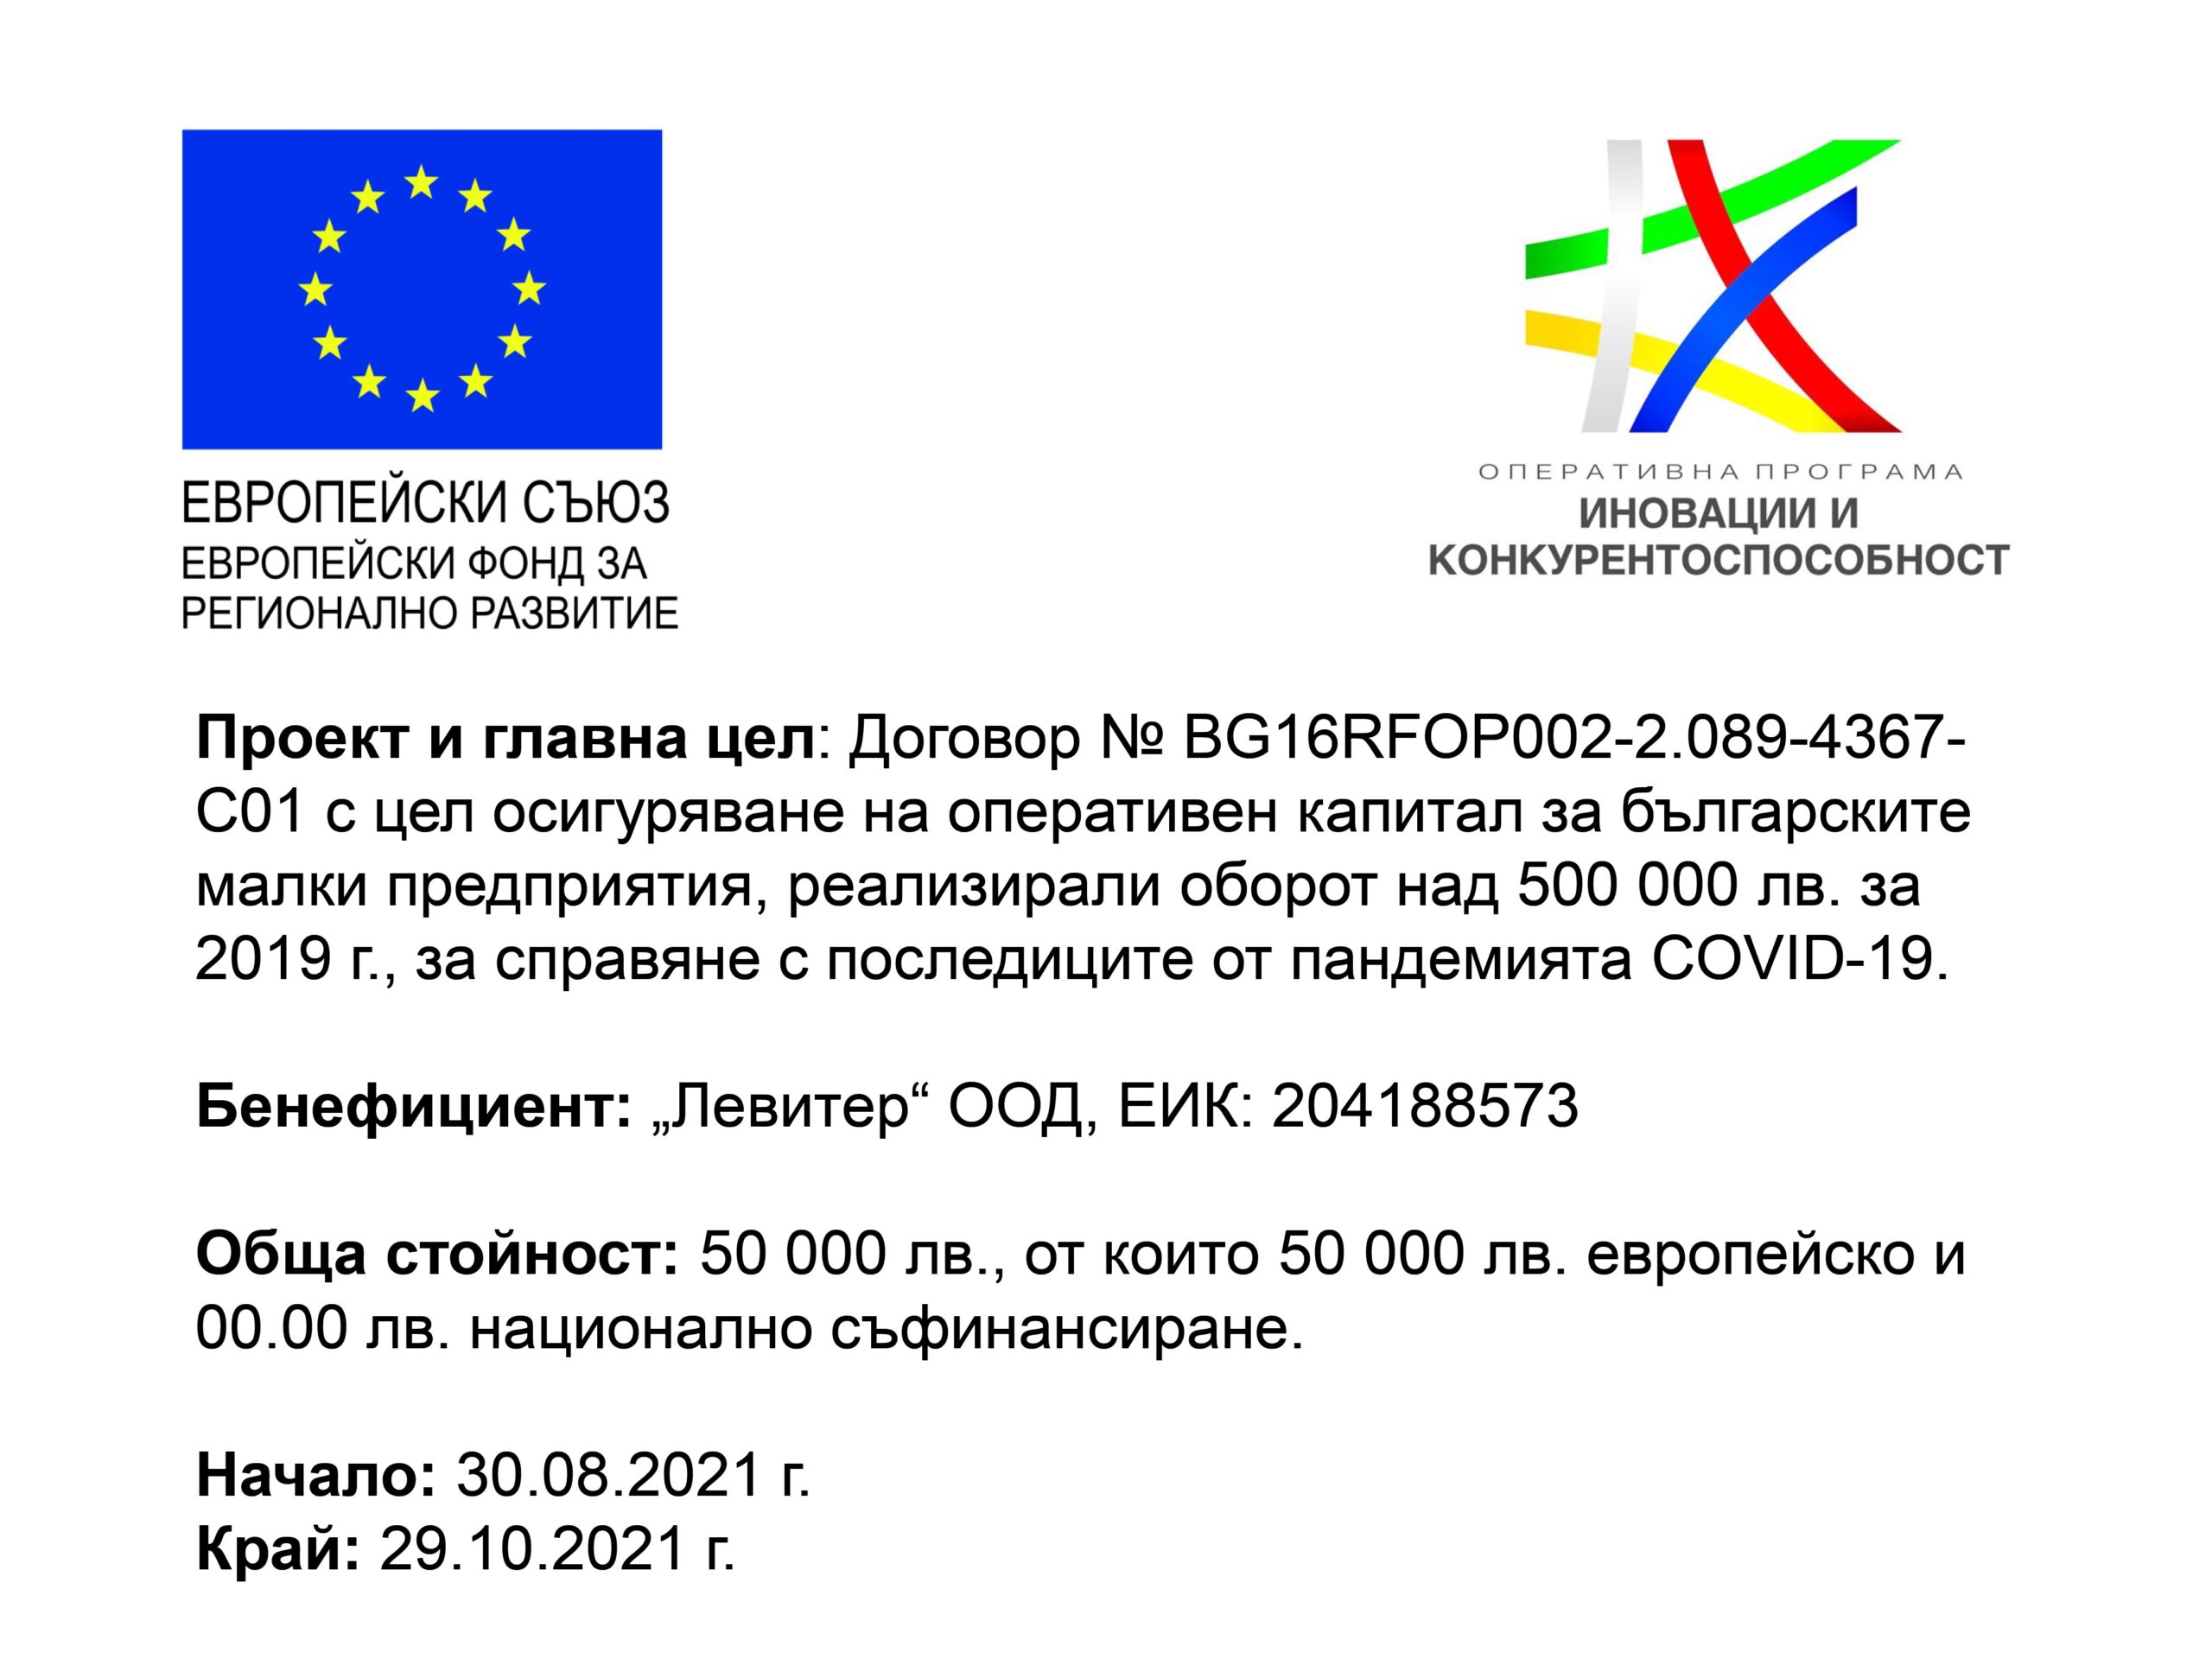 Европейски проект-оперативен капитал за справяне последици COVID пандемия